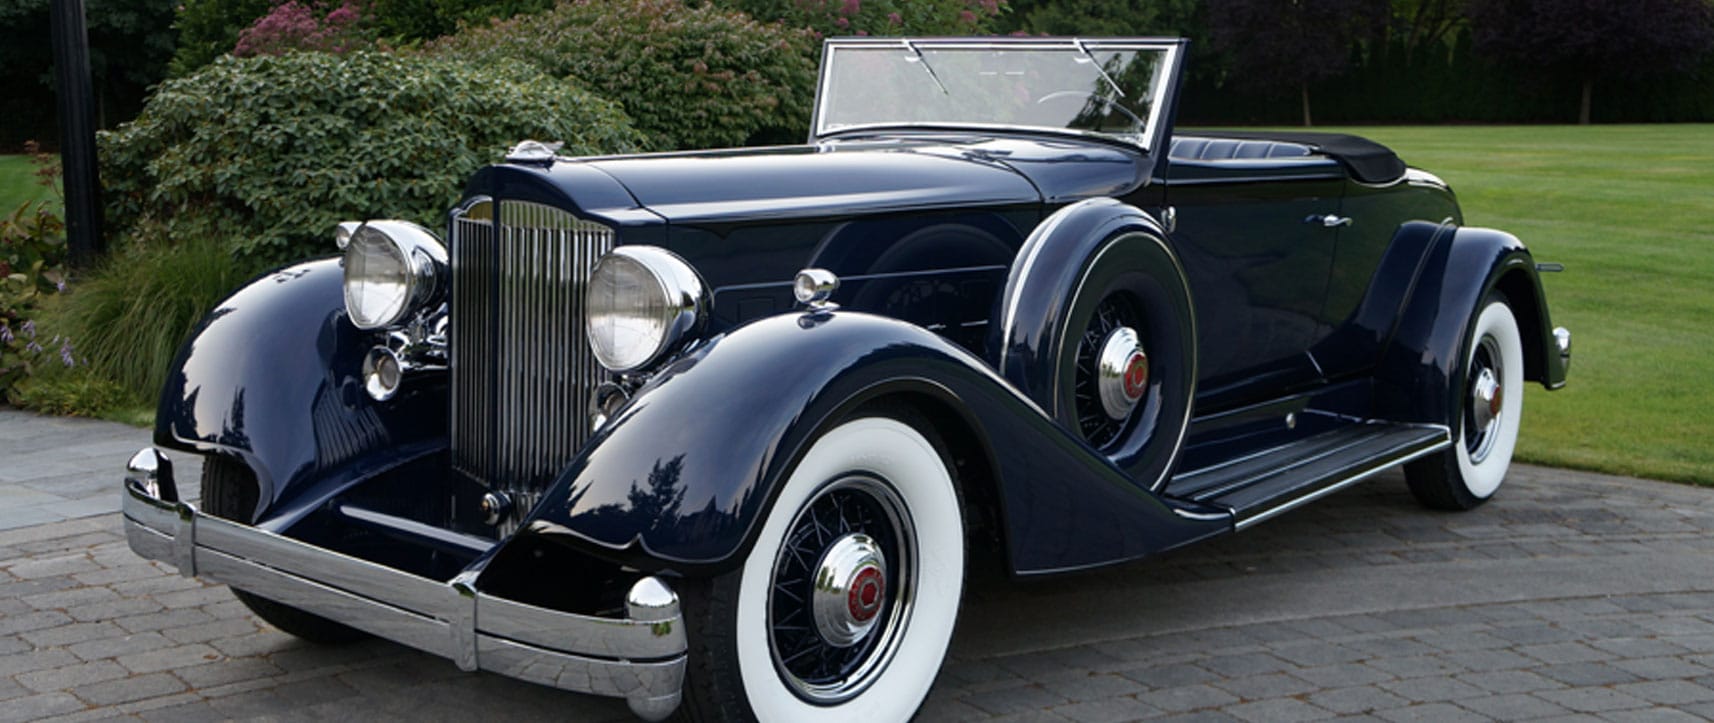 vintage car restoration